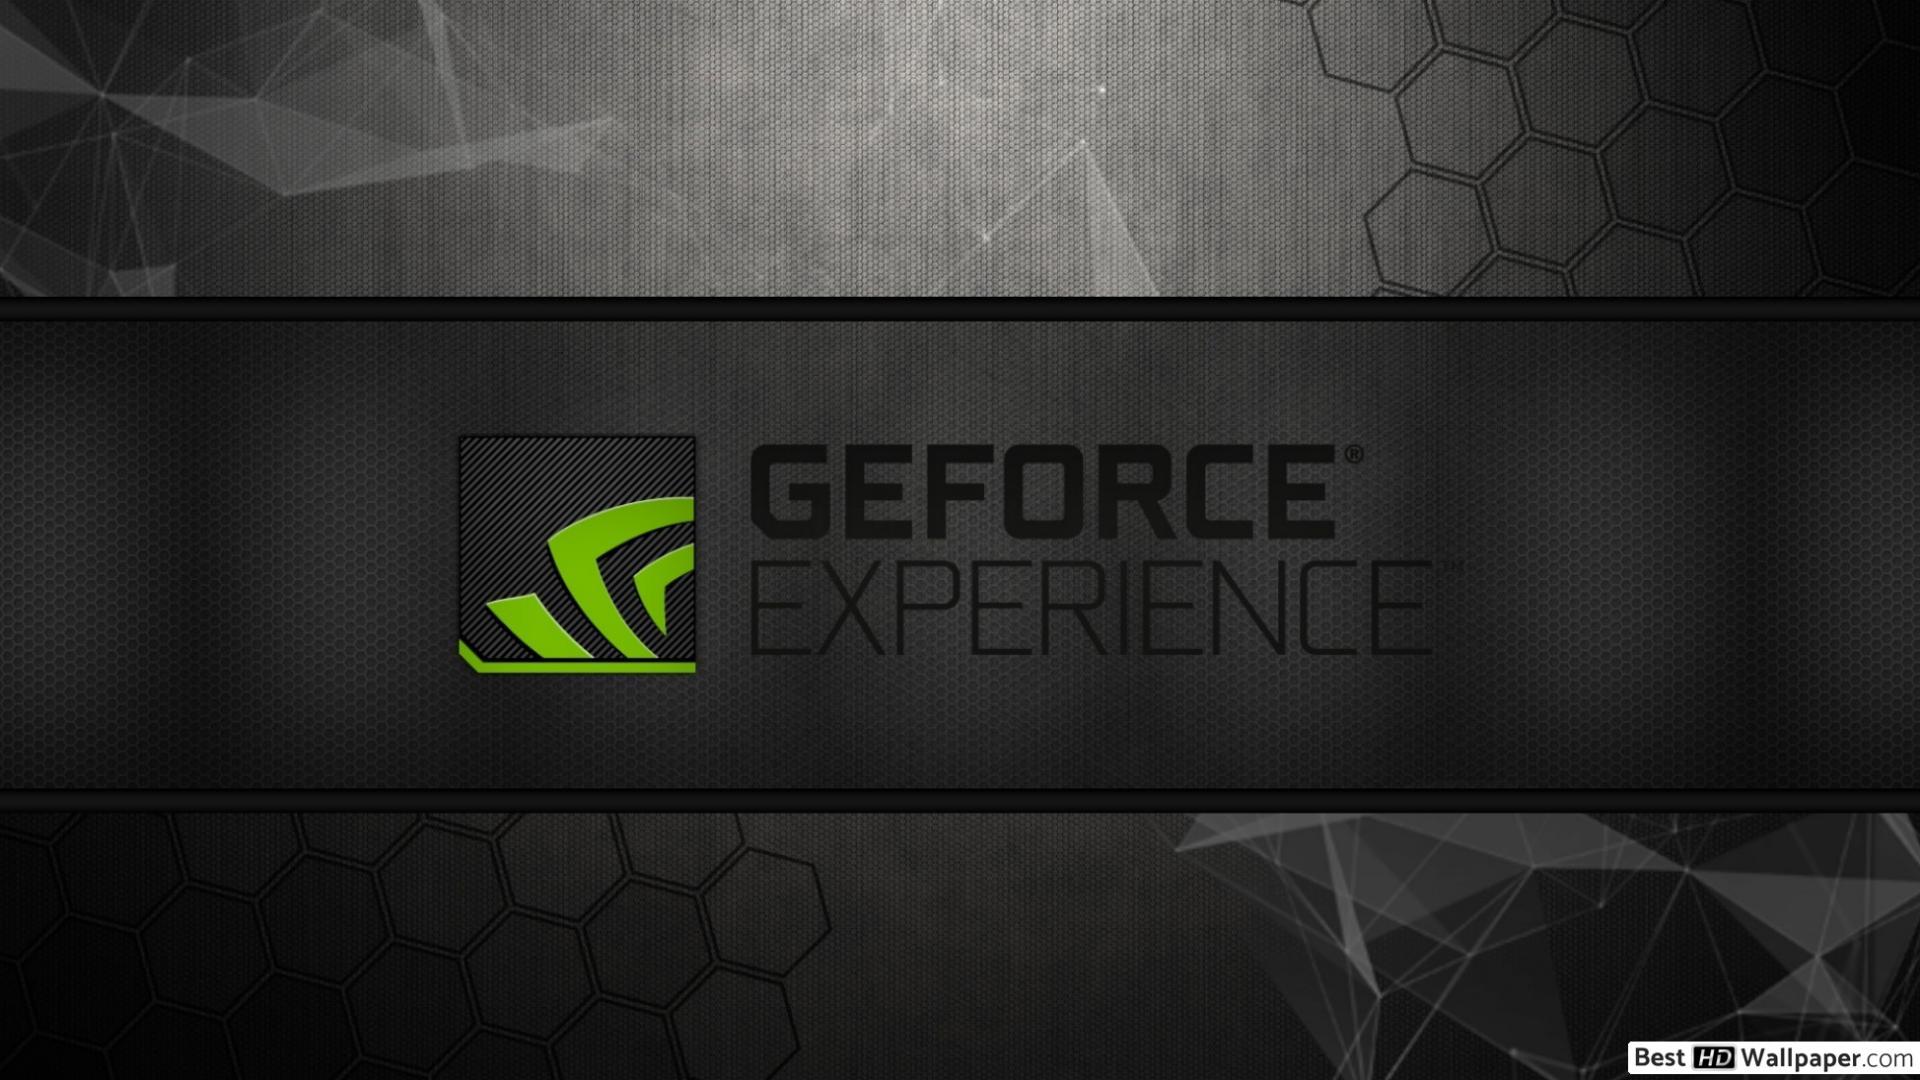 Rtx experience. GEFORCE experience. GEFORCE experience обои. Обои GEFORCE GTX. GTX 1080 NVIDIA обои.